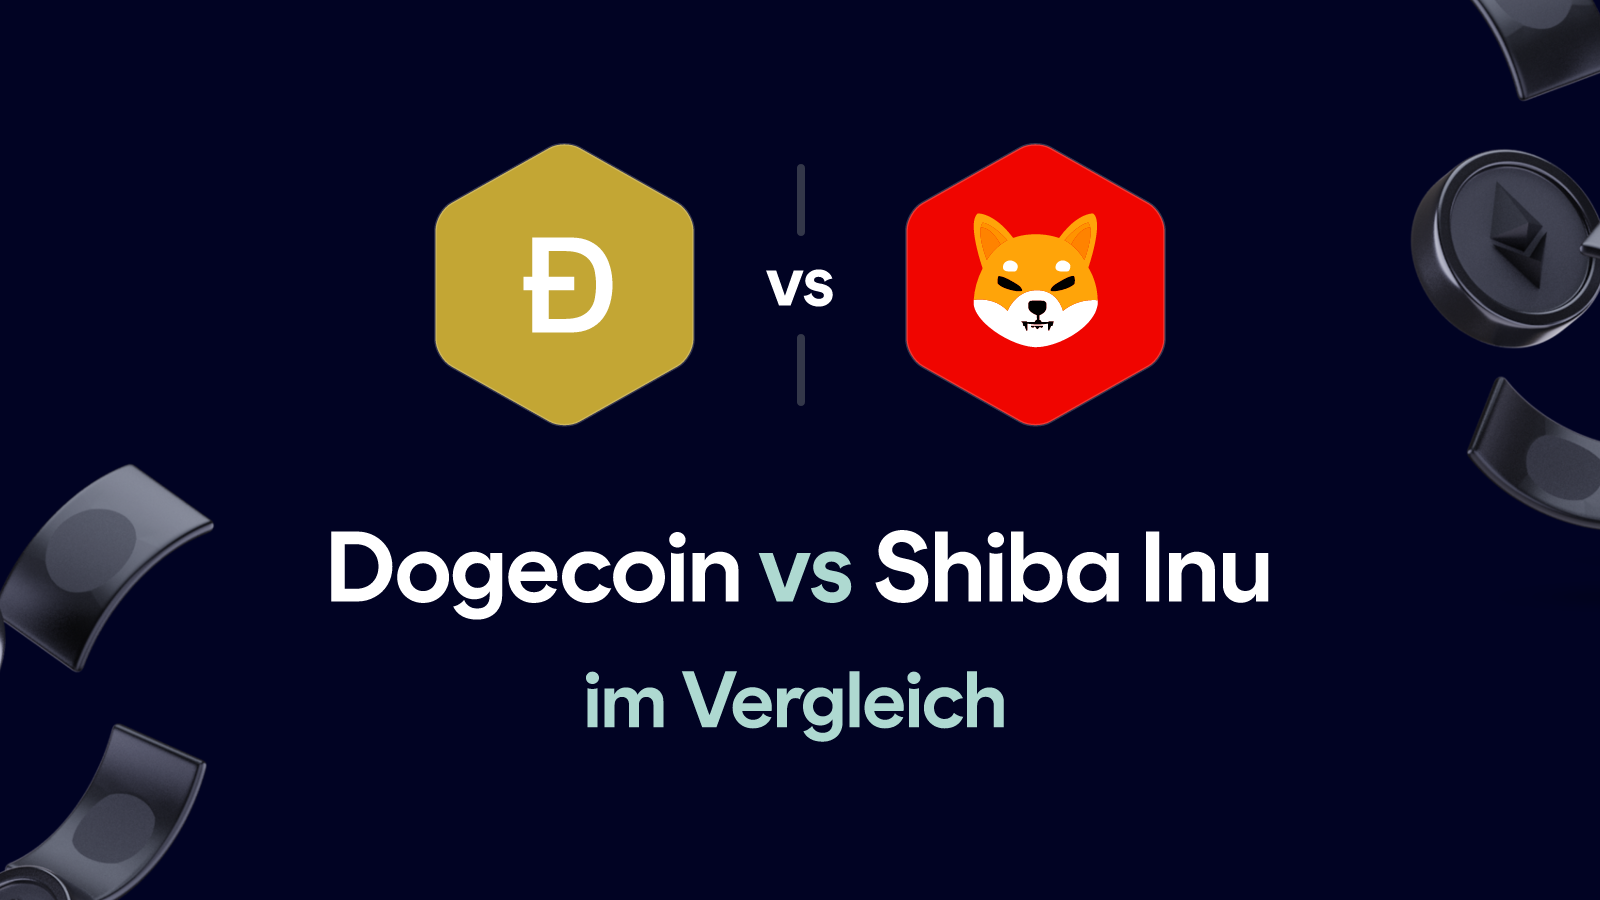 Dogecoin vs Shiba Inu